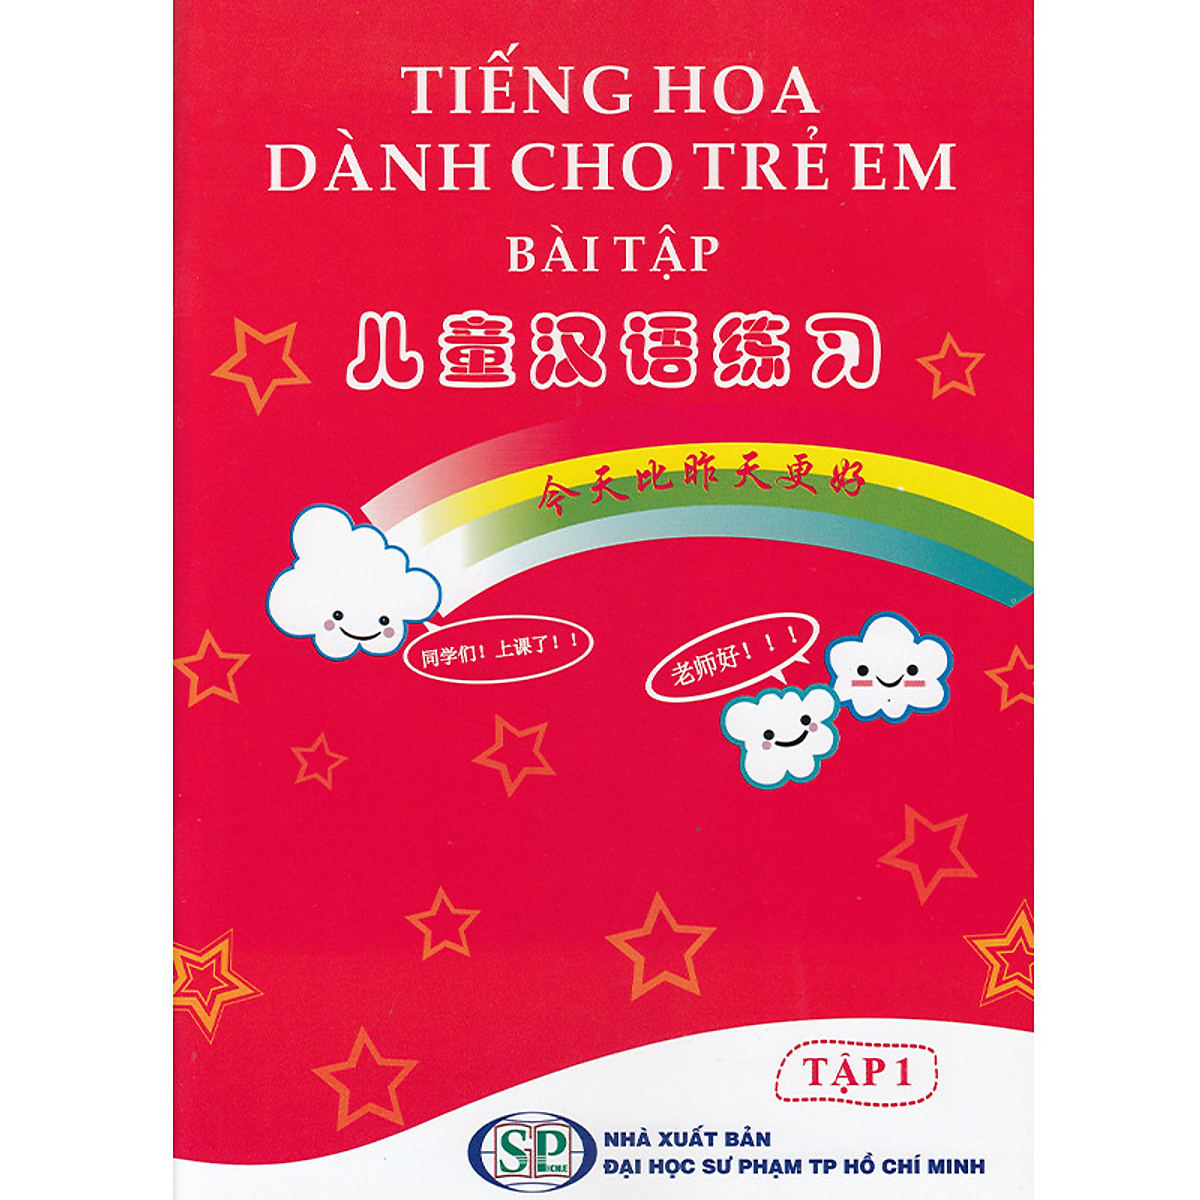 Sách bài tập tiếng Hoa dành cho trẻ em tập 1